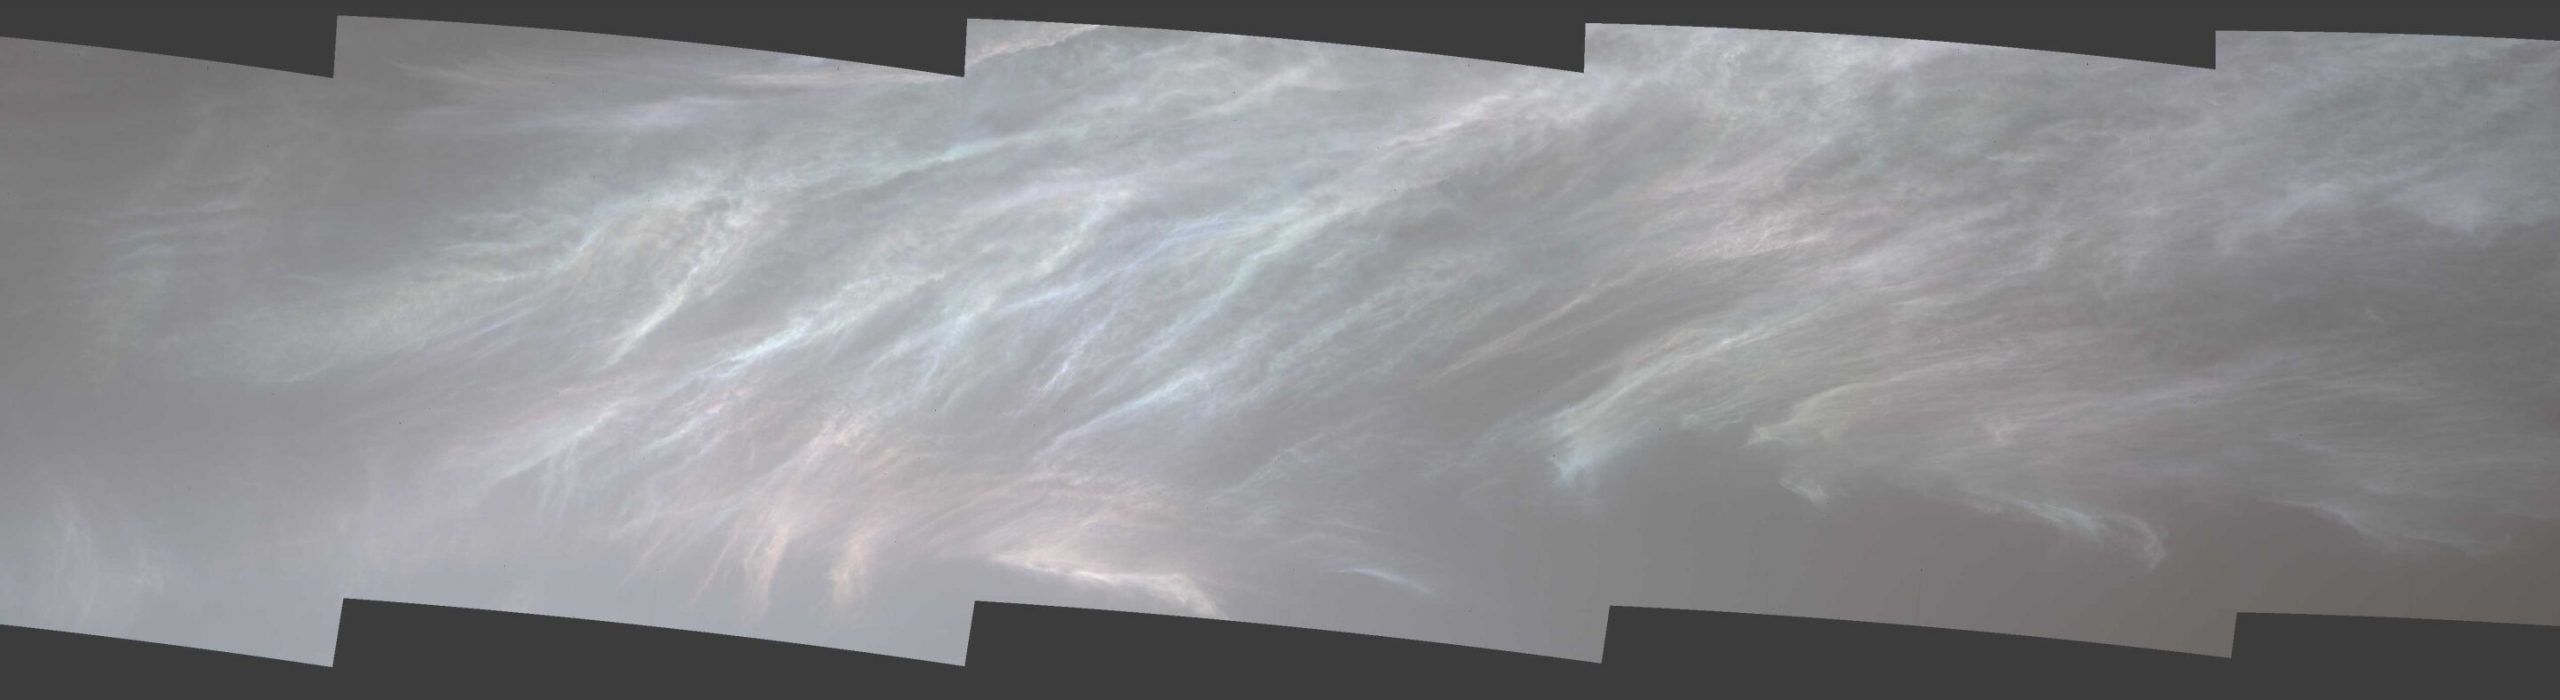 El rover Curiosity captura nubes brillantes en Marte